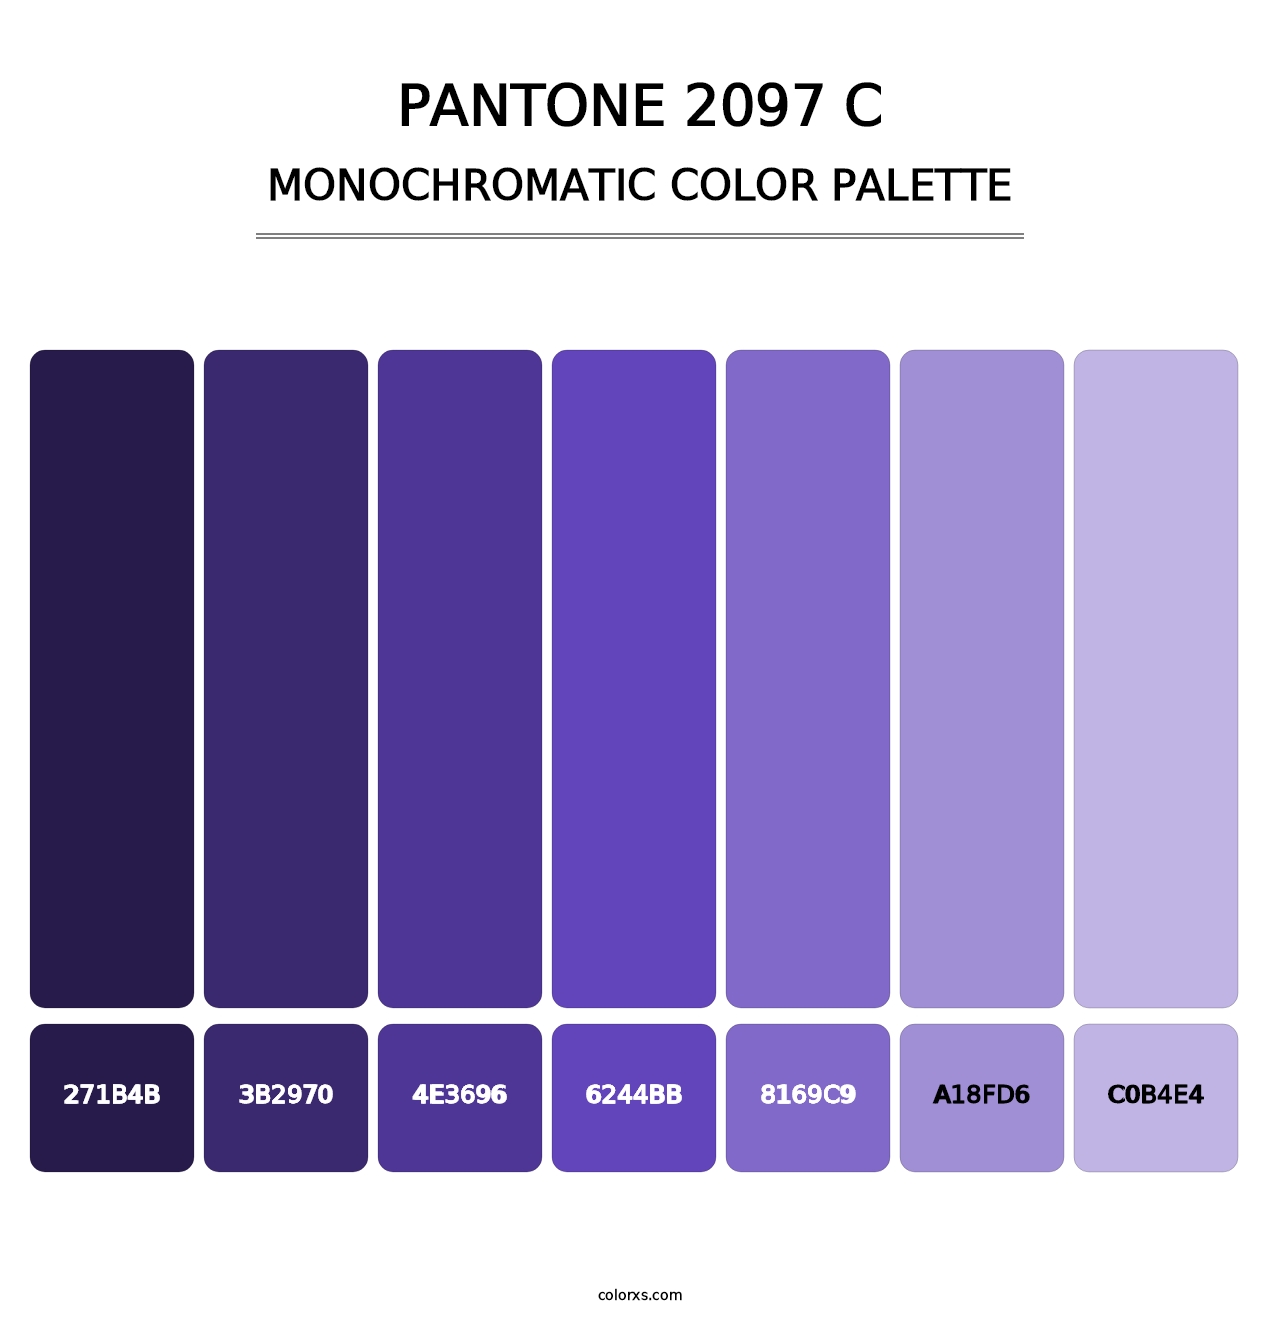 PANTONE 2097 C - Monochromatic Color Palette